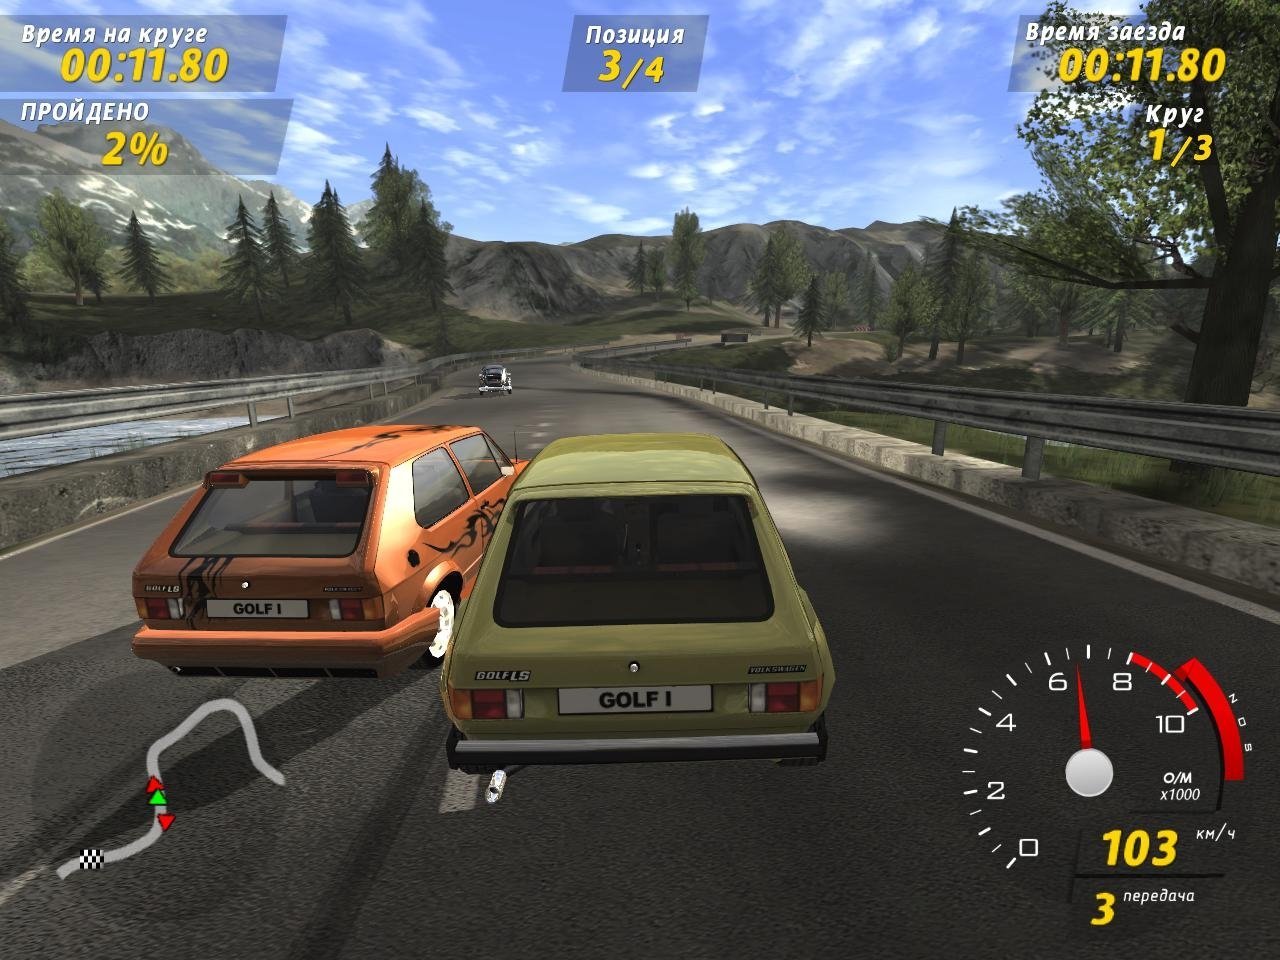 Игру обычные машины. Игра Volkswagen GTI Racing. GTI Racing Volkswagen Golf Racer. GTI Racing игра 2006. Русские гонки.